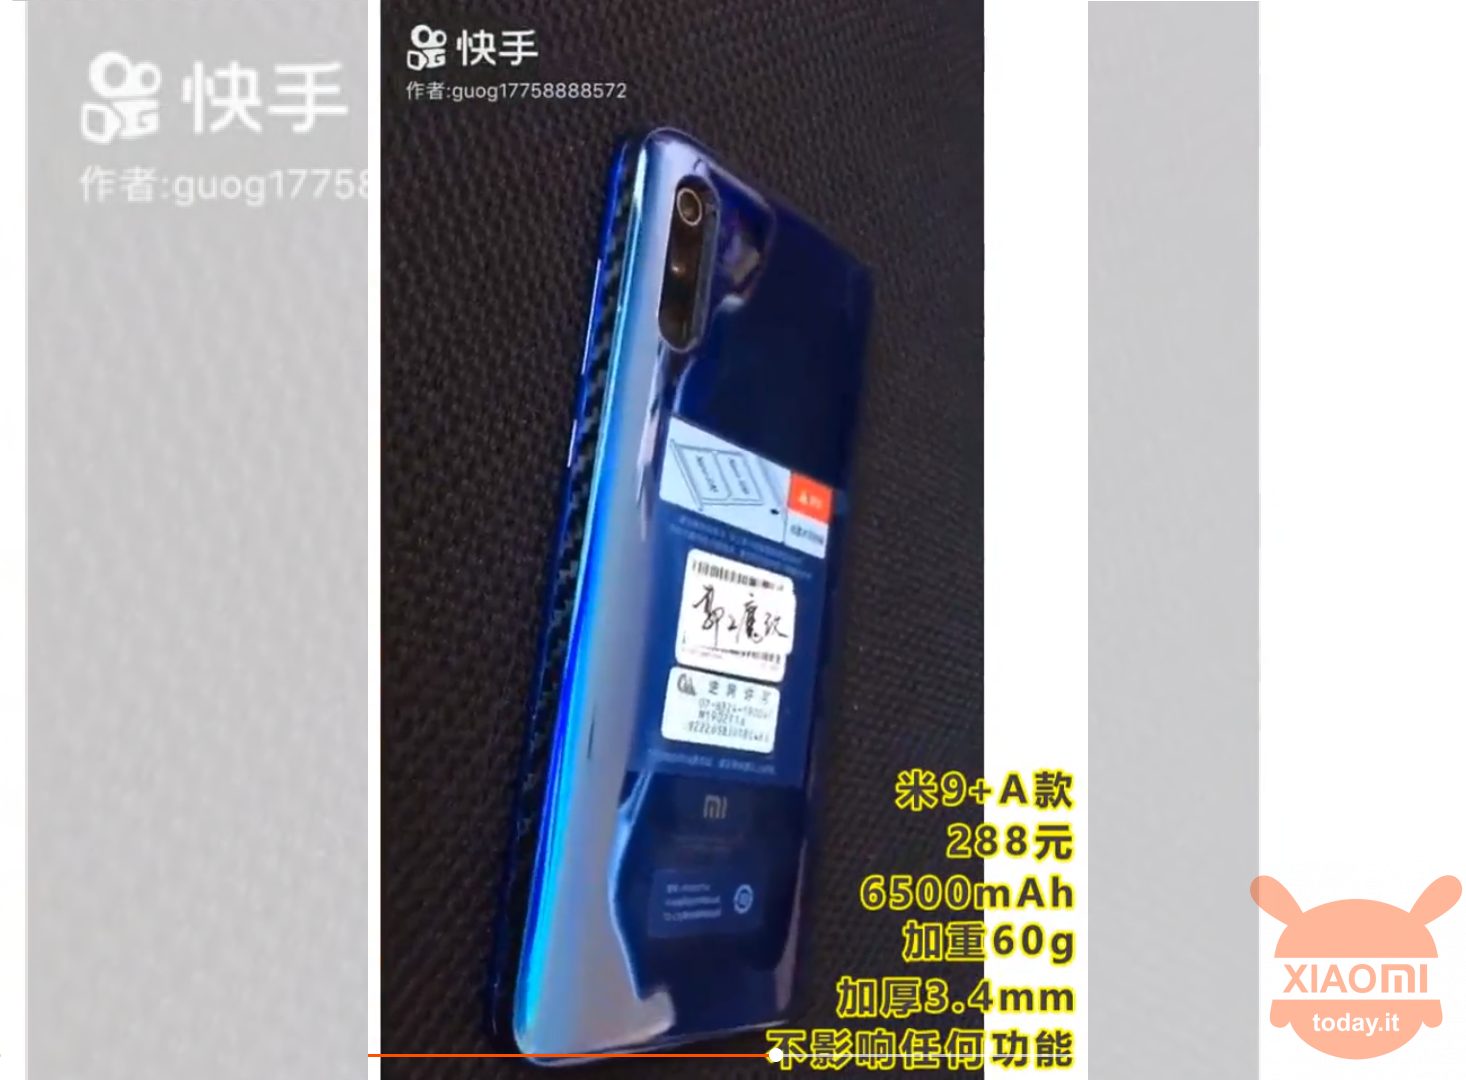 Xiaomi Mi 9 6500mAh की बैटरी